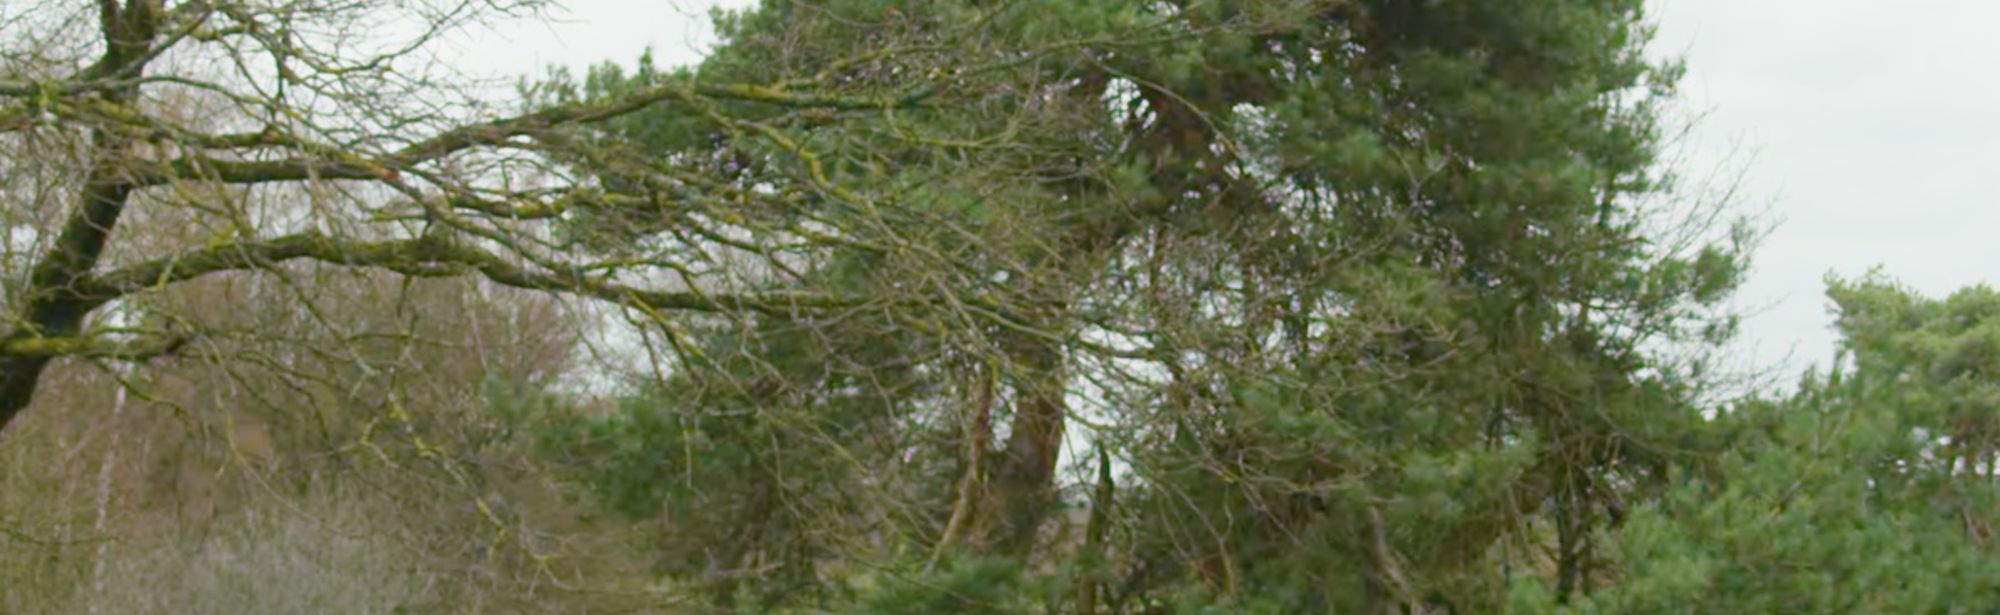 Een boom en groene struiken